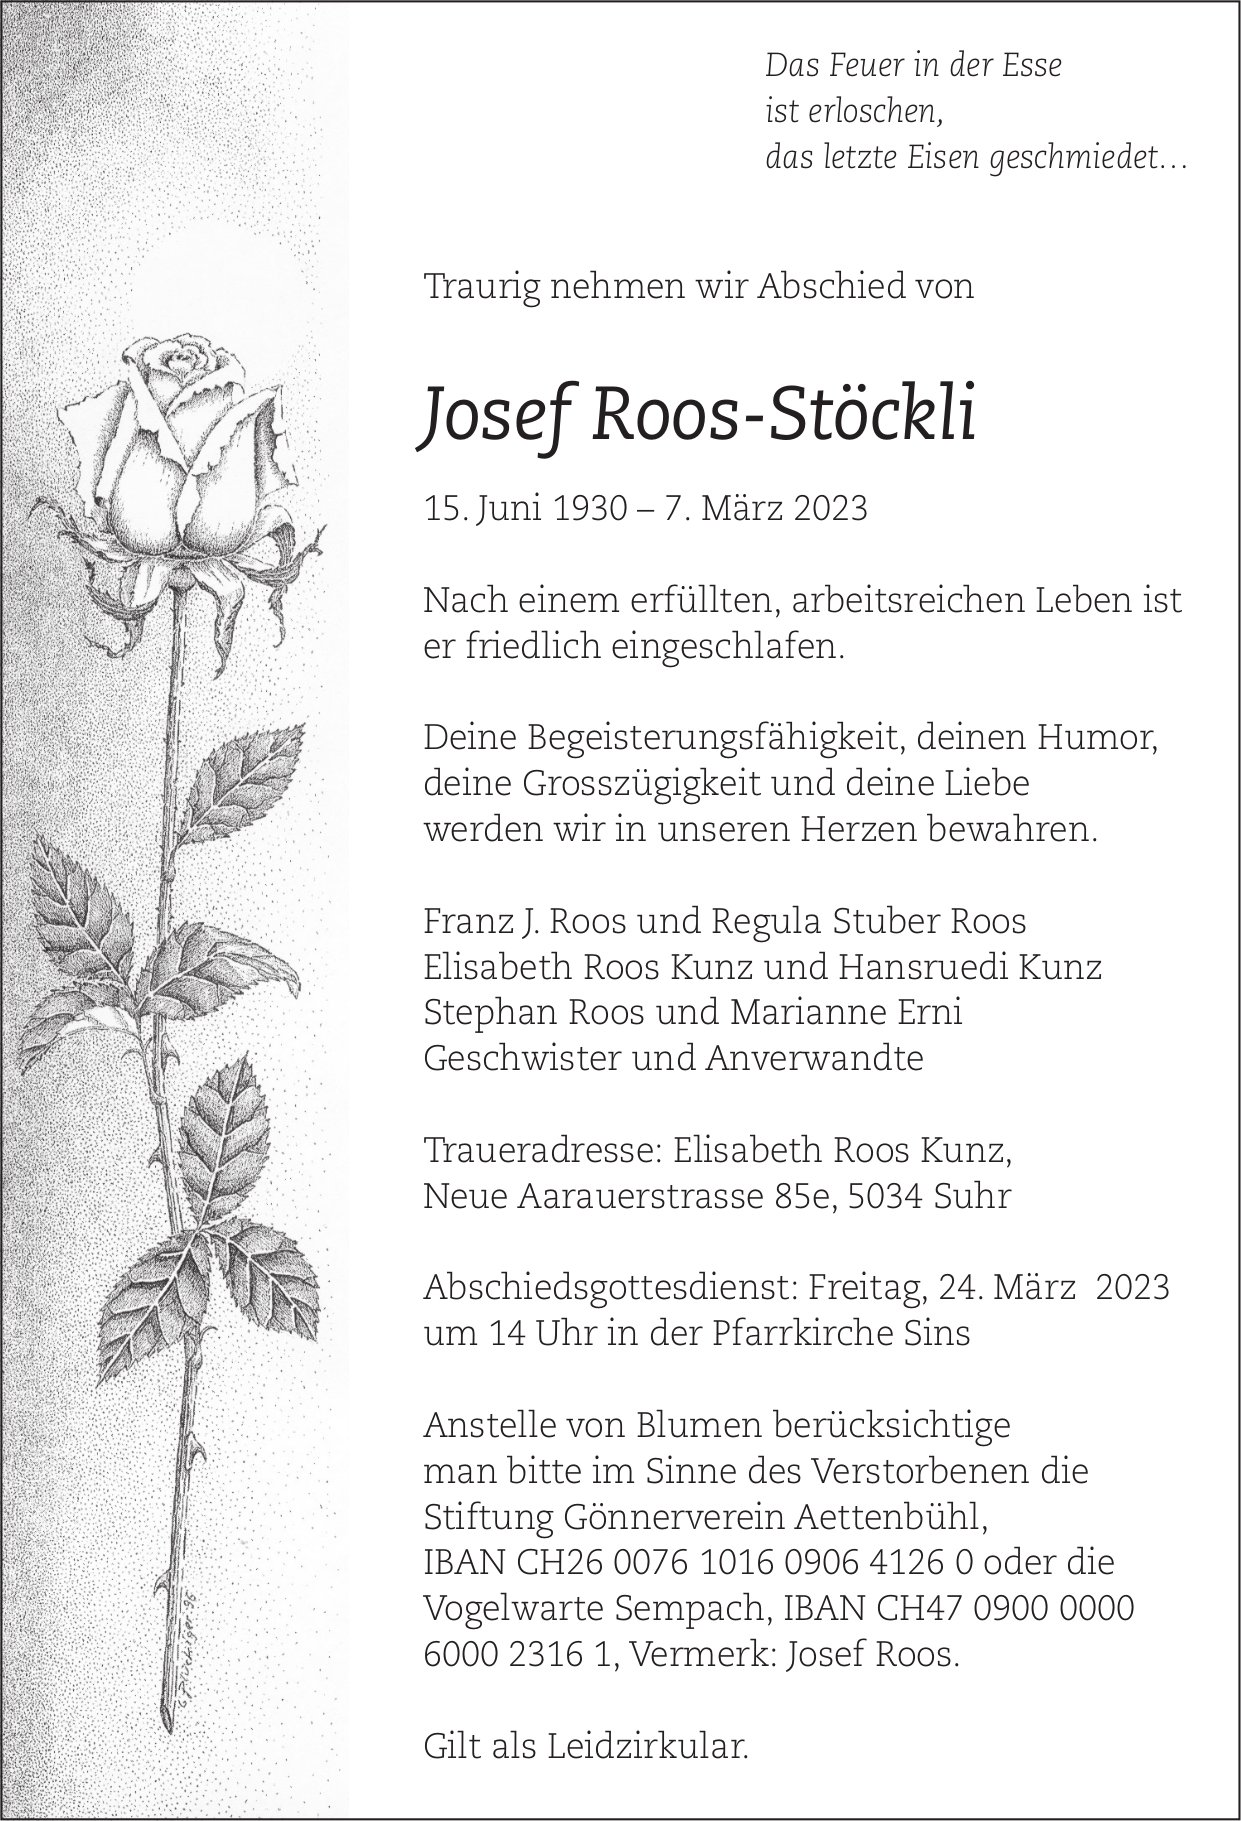 Roos-Stöckli Josef, März 2023 / TA